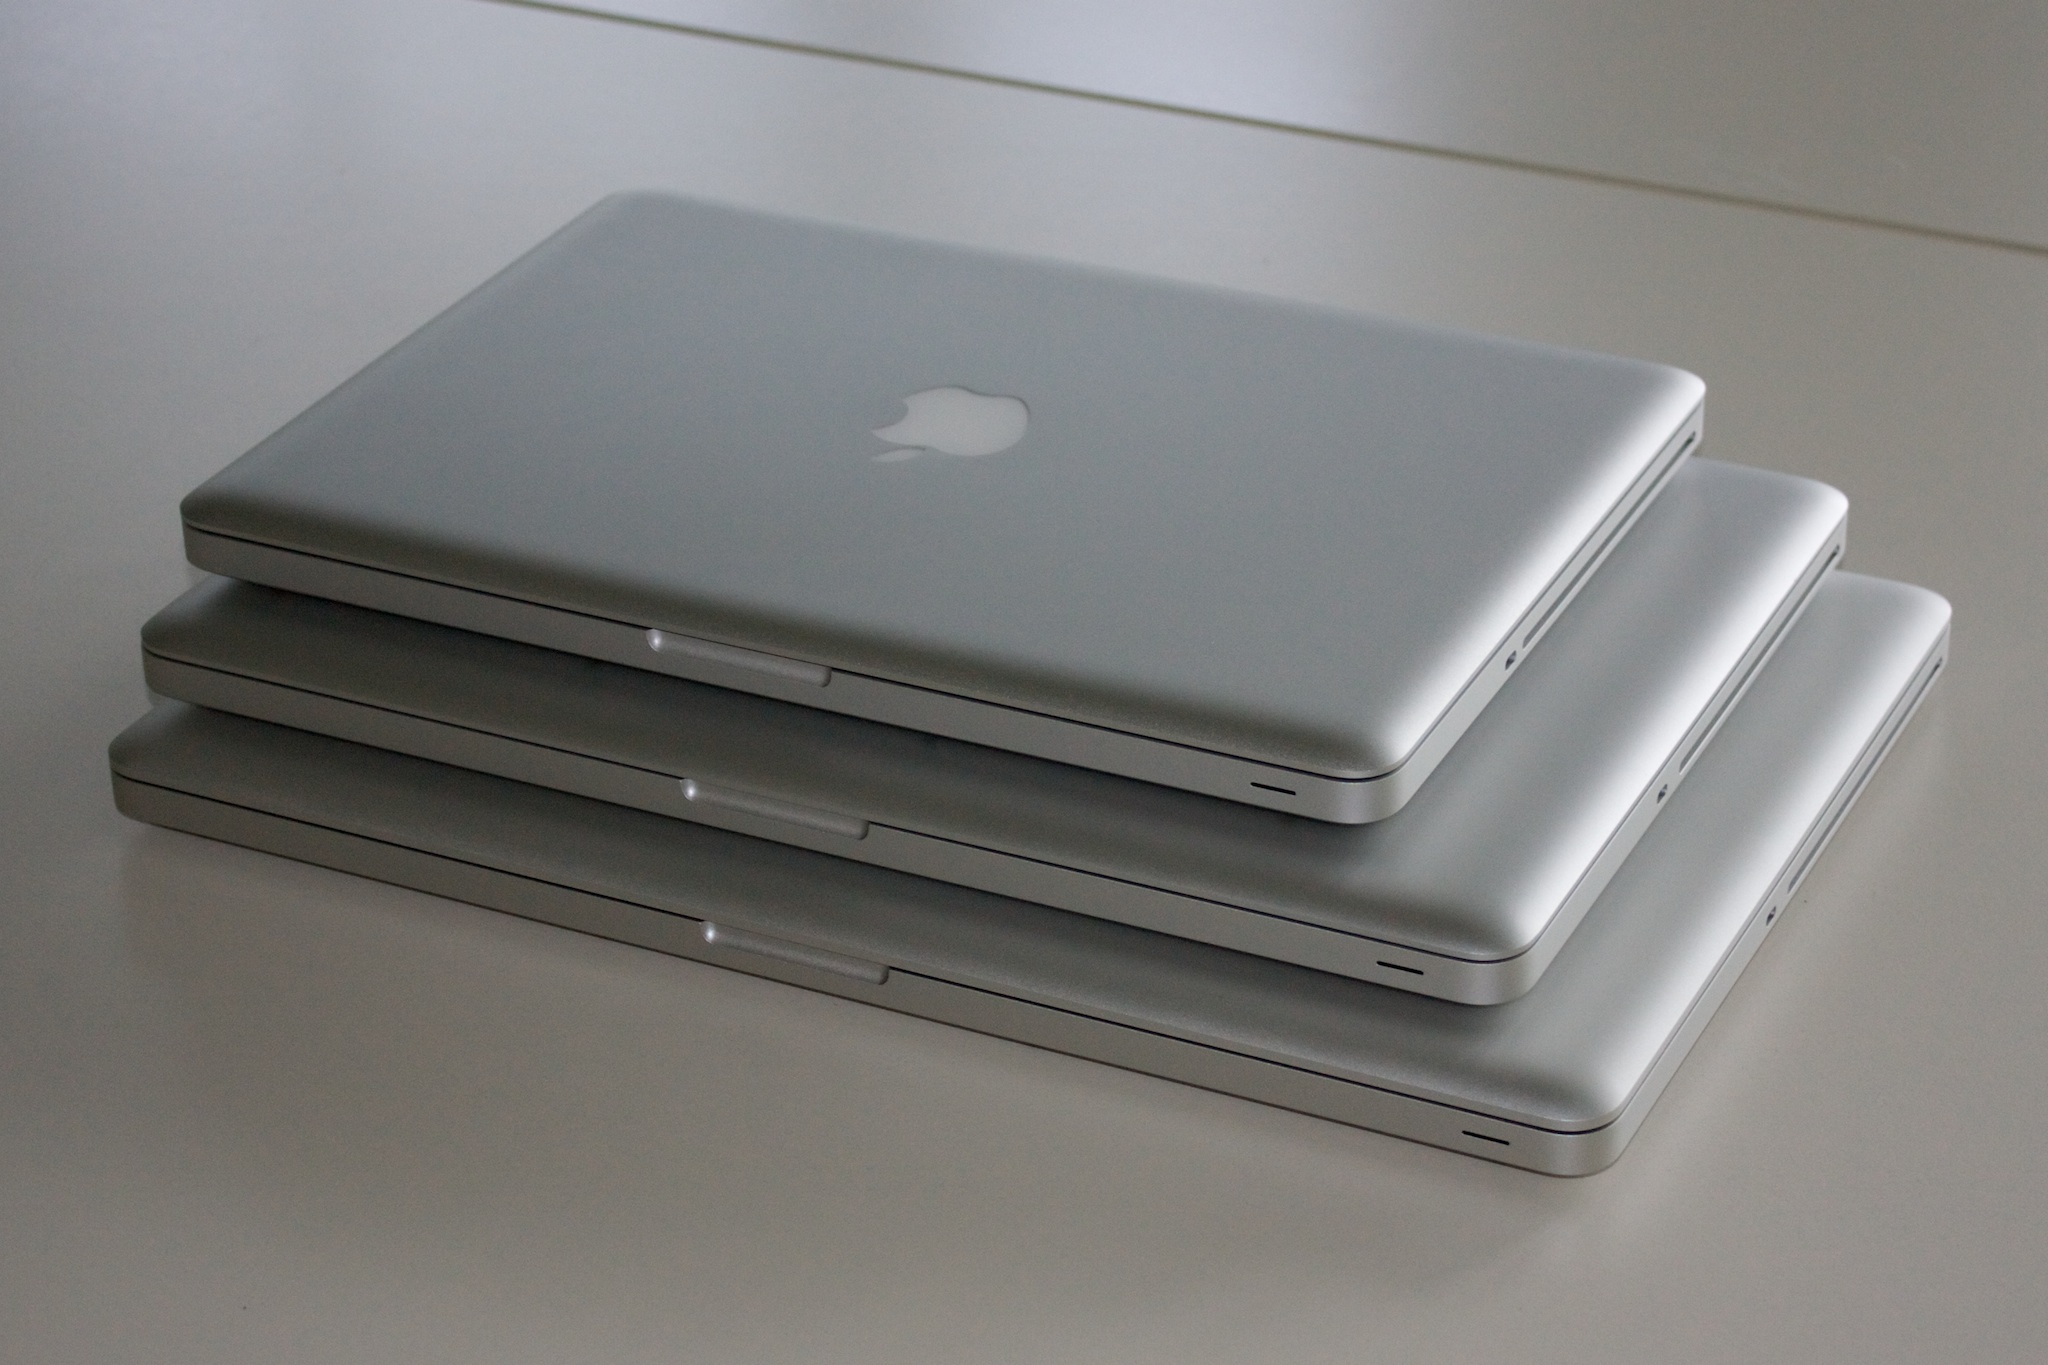 Apple MacBook Pro Update